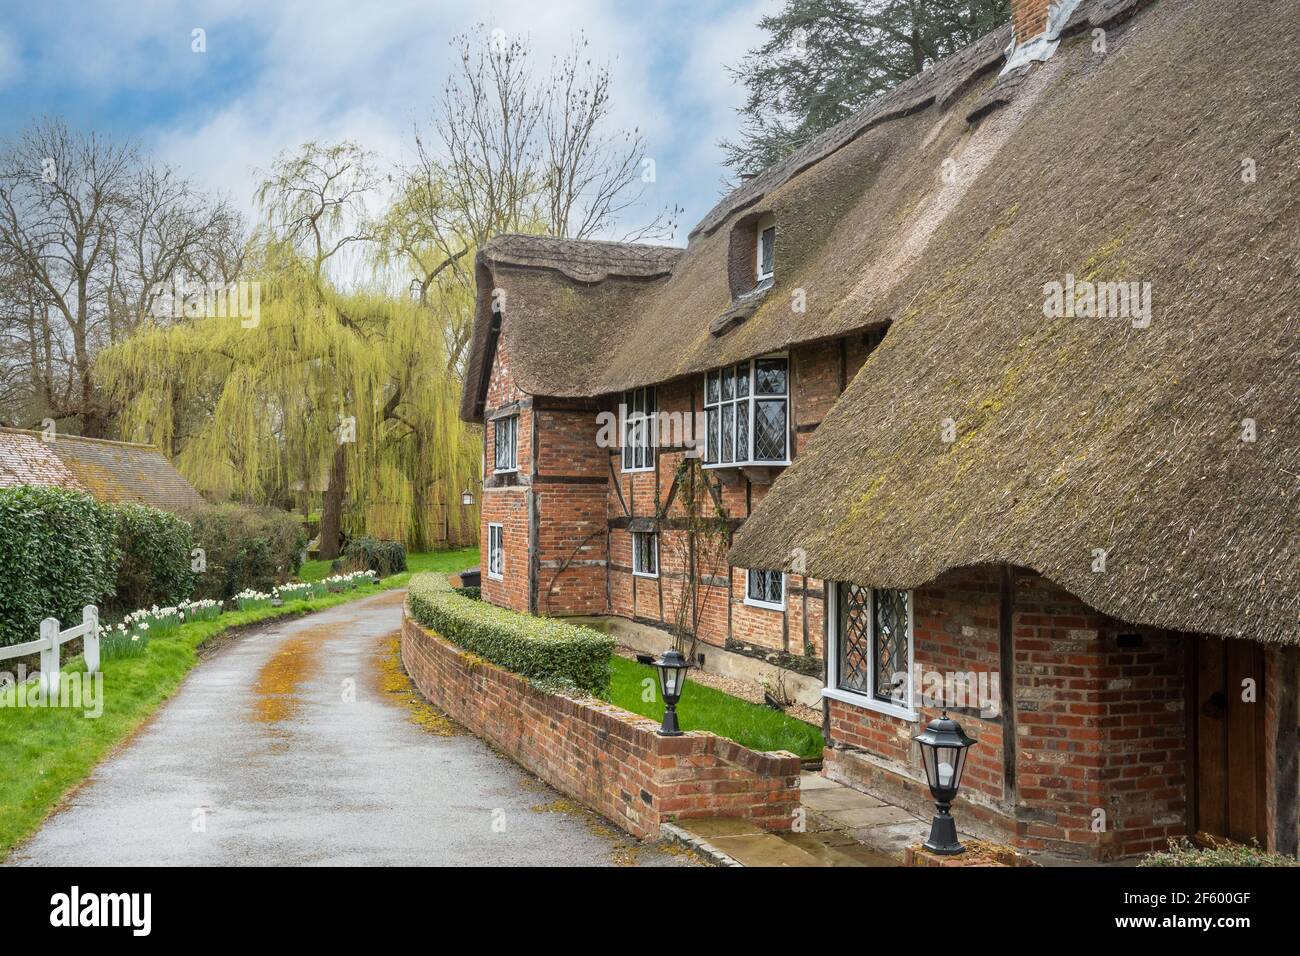 Historique 17ème siècle grade II classé chaumières appelées les casernes dans le village de Dogmersfield, Hampshire, Angleterre, Royaume-Uni Banque D'Images